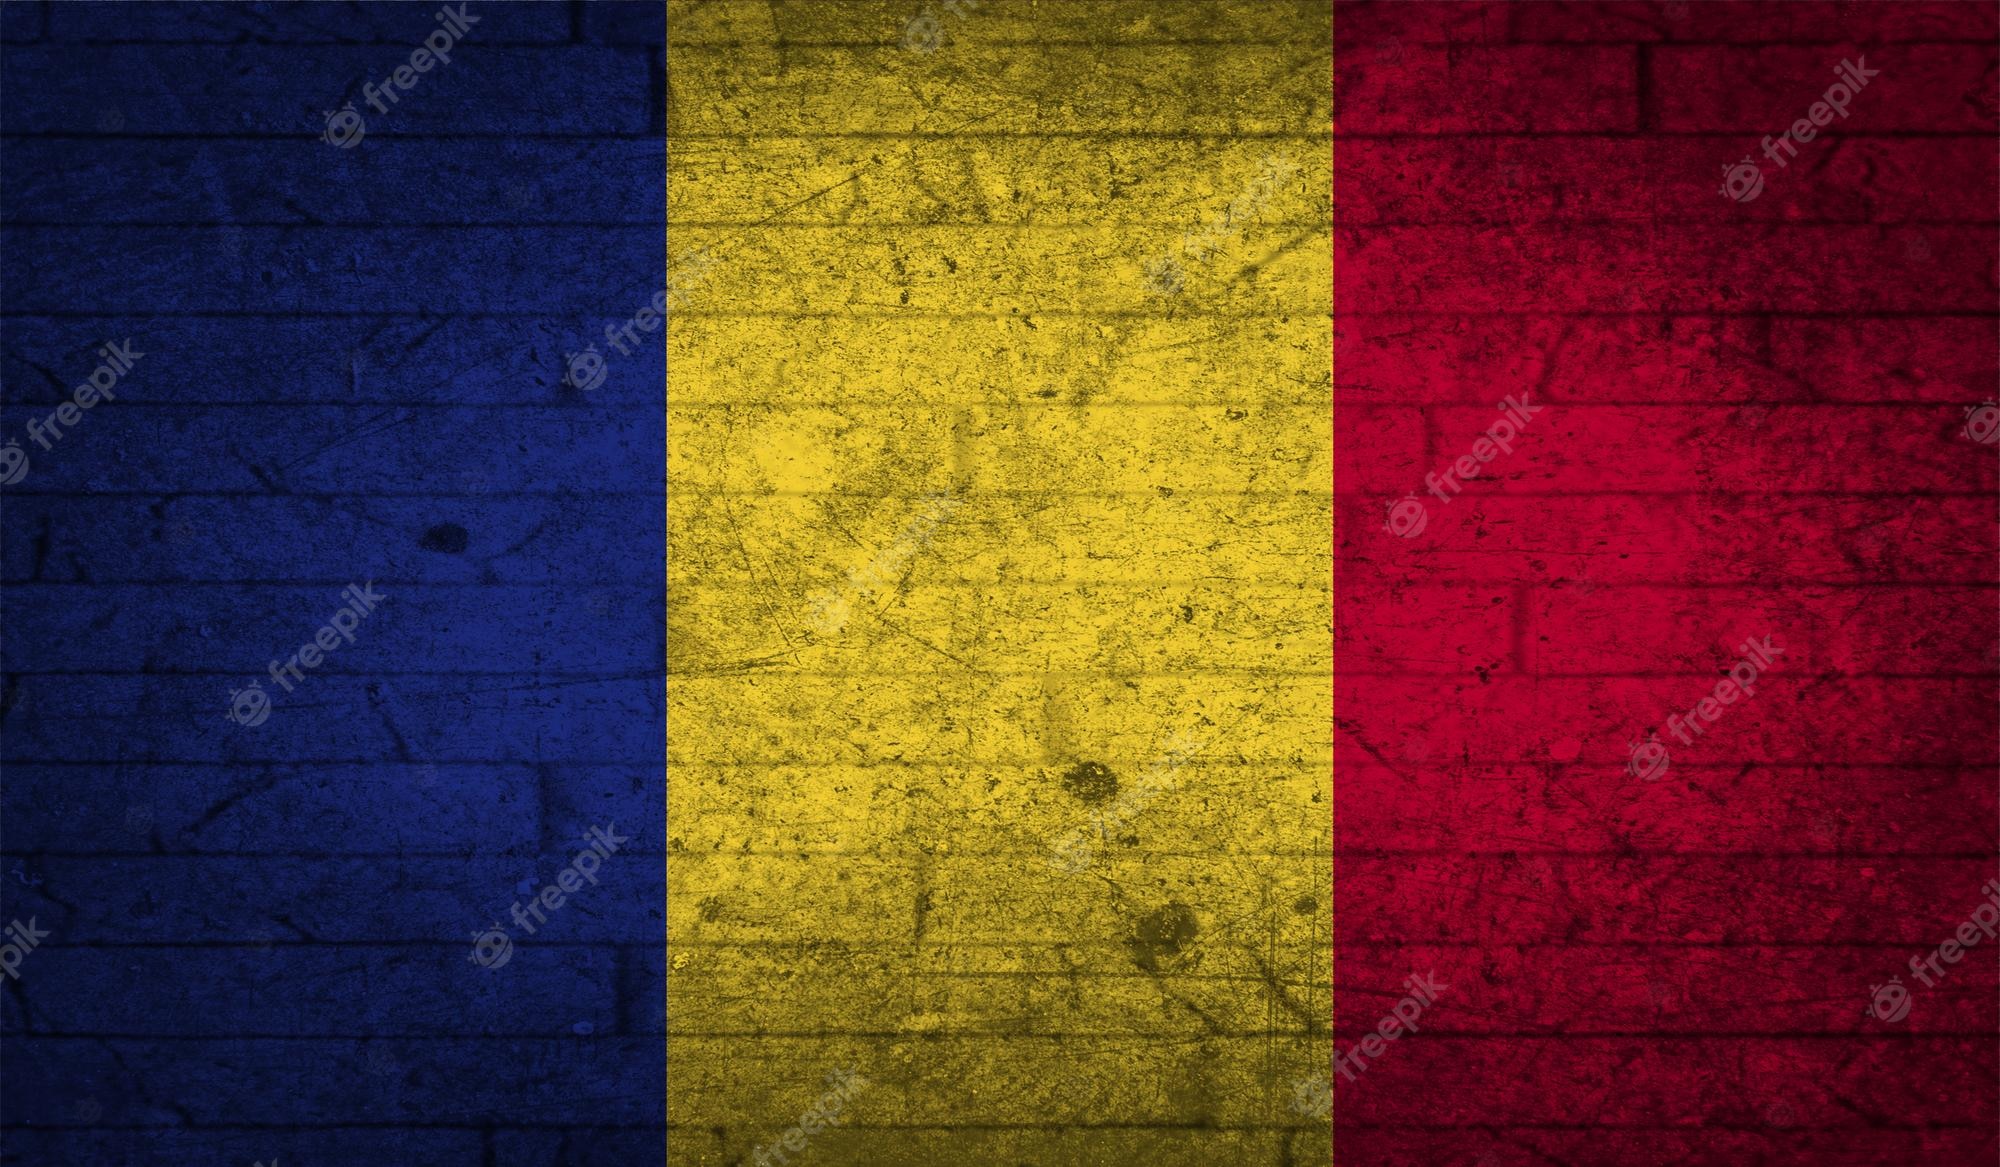 Romania pride images